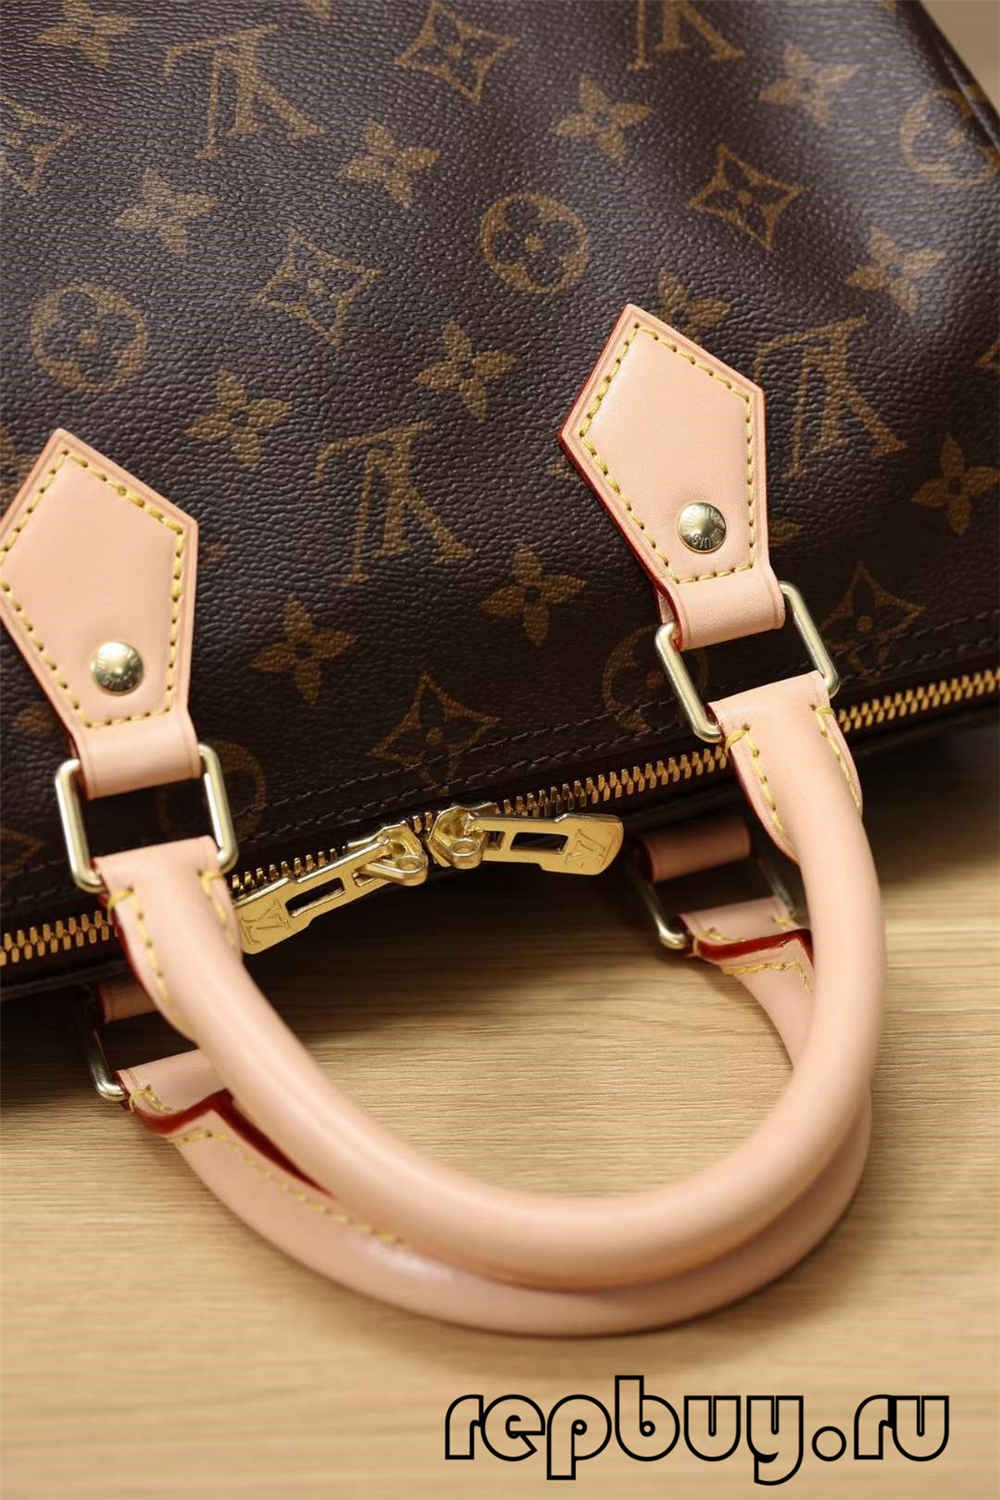 ምርጥ ጥራት ያለው ሉዊስ ቫዩንተን ስፒዲ 25 ቦርሳ ቅጂ የመስመር ላይ ግብይት (2022 የዘመነ)-Best Quality Fake Louis Vuitton Bag Online Store, Replica designer bag ru